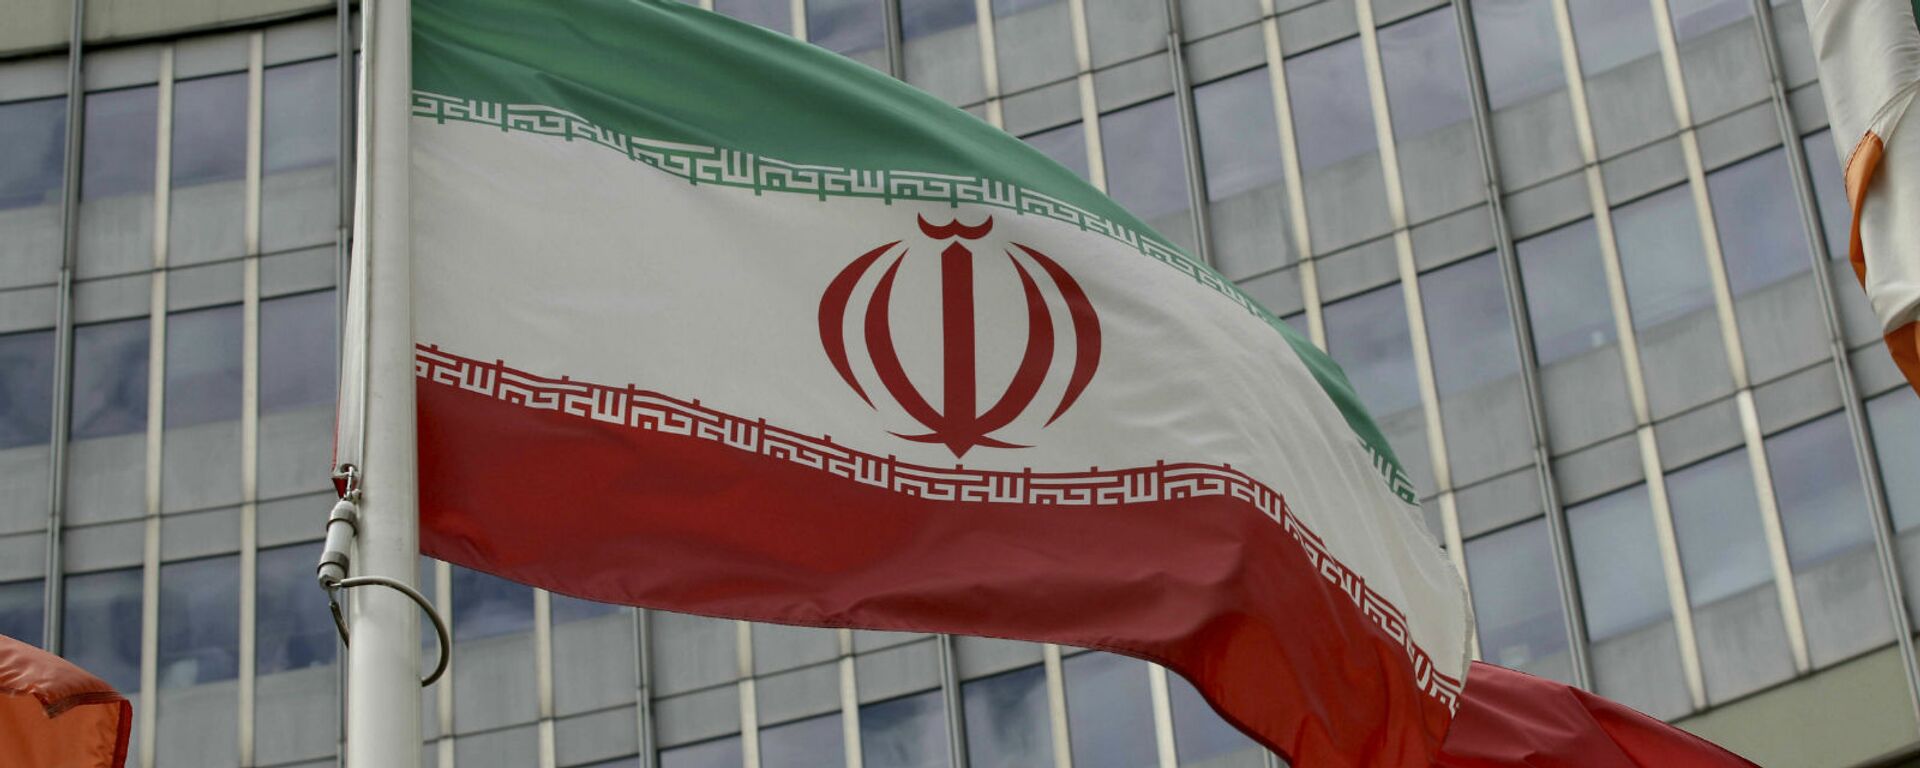 Иранский флаг развевается у здания ООН, в котором находится офис Международного агентства по атомной энергии МАГАТЭ (10 июля 2019). Вена - Sputnik Արմենիա, 1920, 14.04.2021